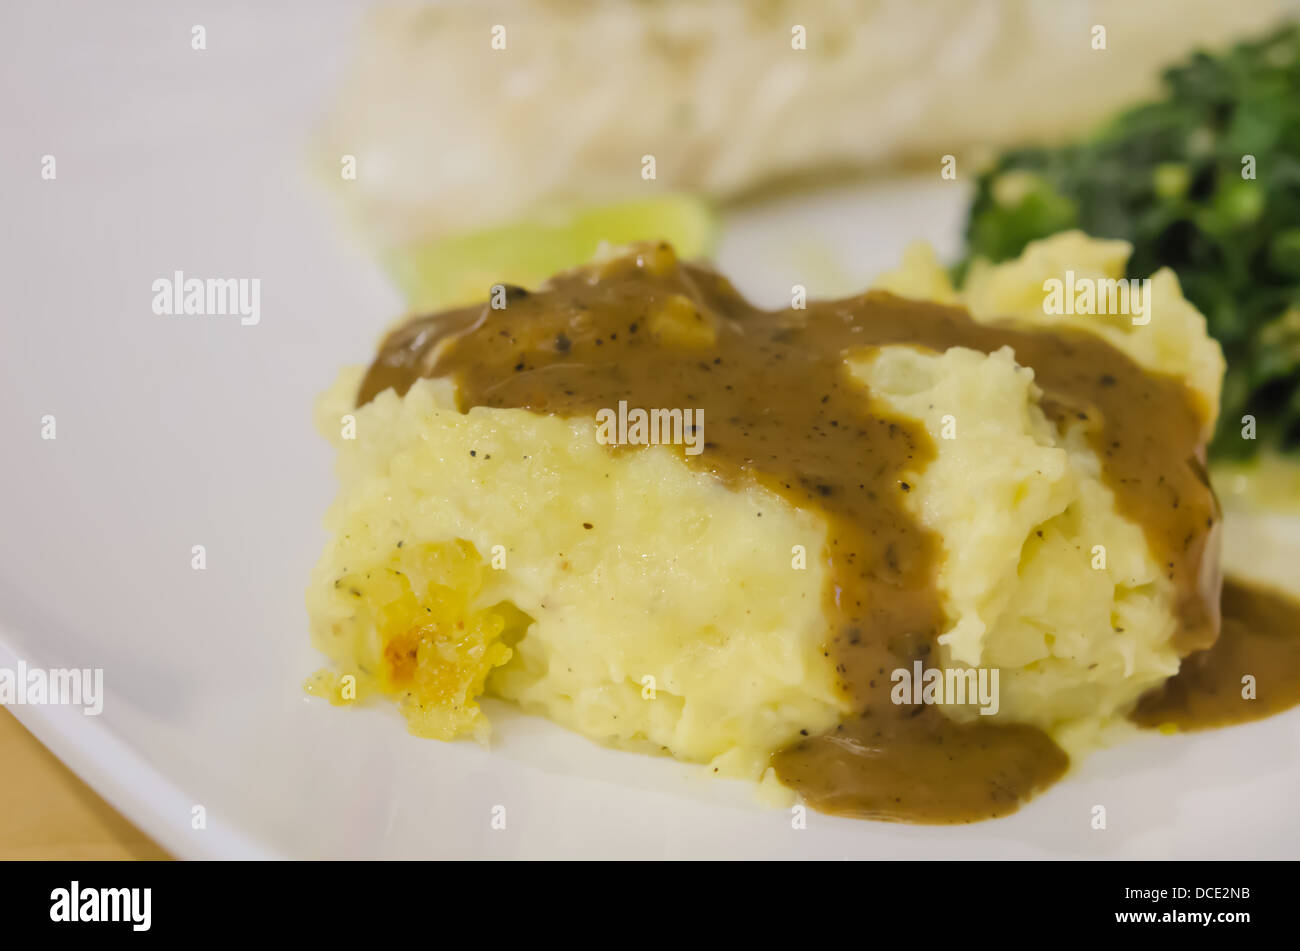 close up Mashed potato with gravy on white dish Stock Photo